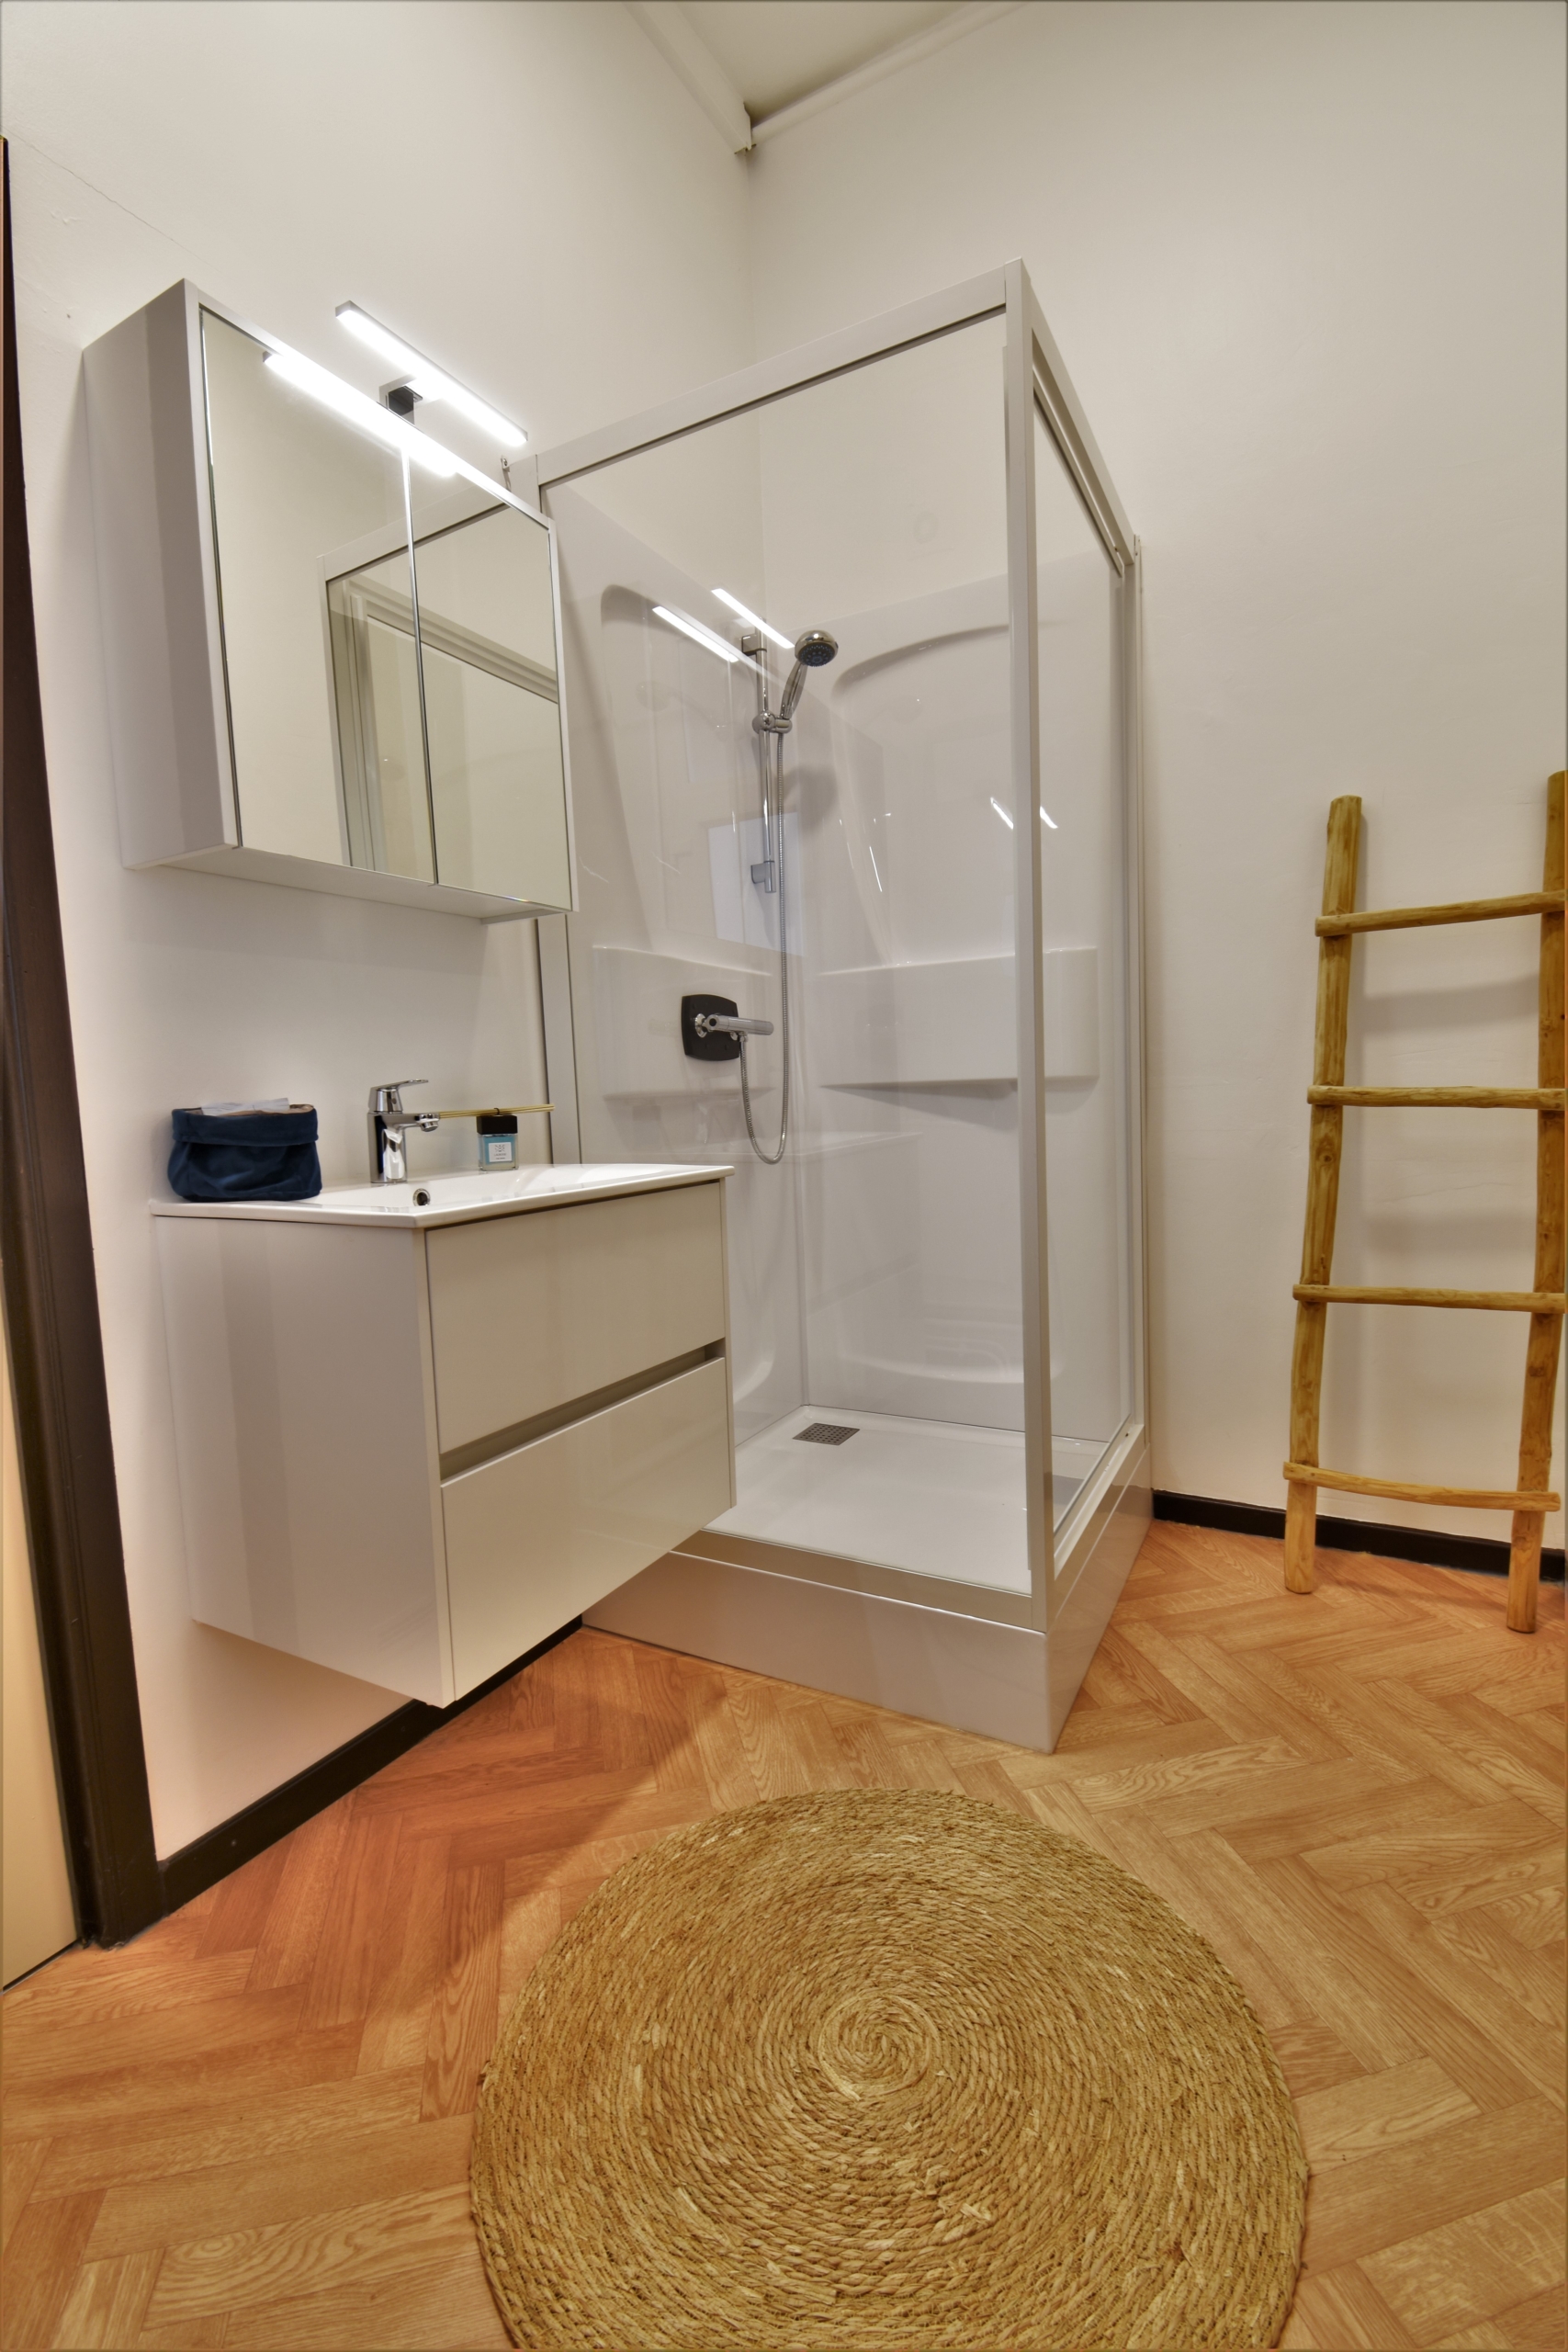 Ferienwohnung - Badezimmer - nachher Maison de vacances - salle de bain - après